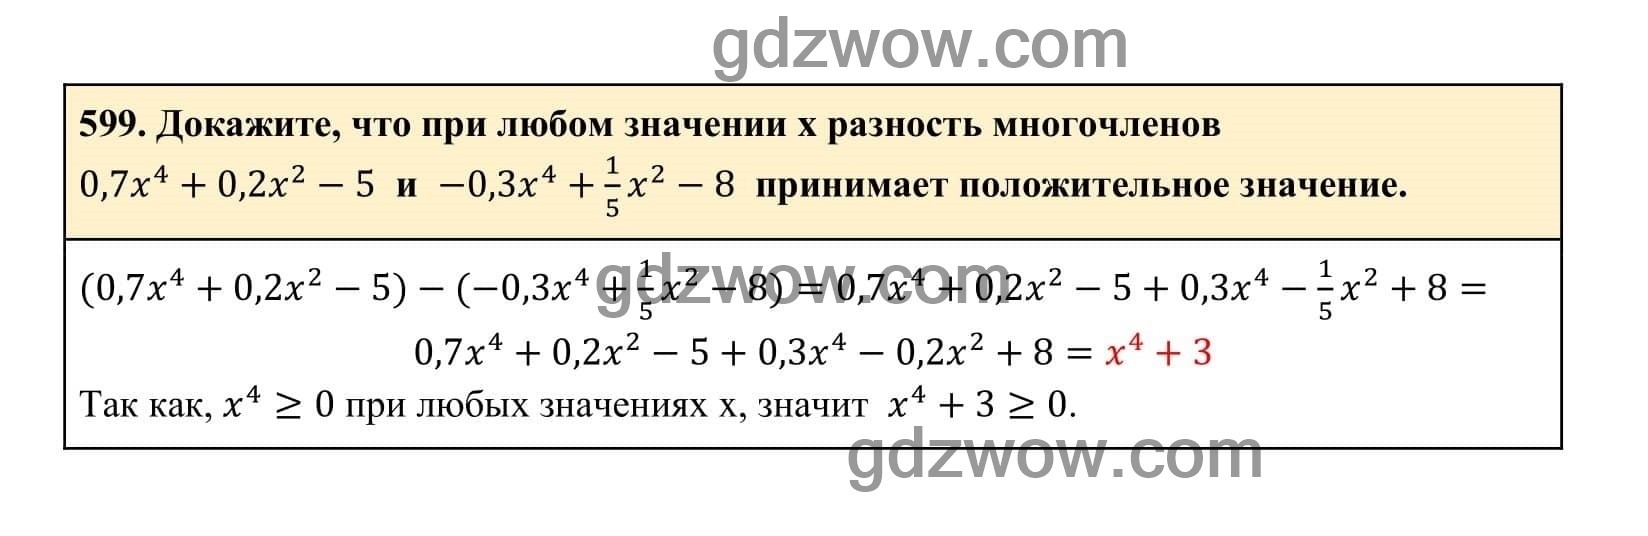 Упражнение 599 - ГДЗ по Алгебре 7 класс Учебник Макарычев (решебник) - GDZwow